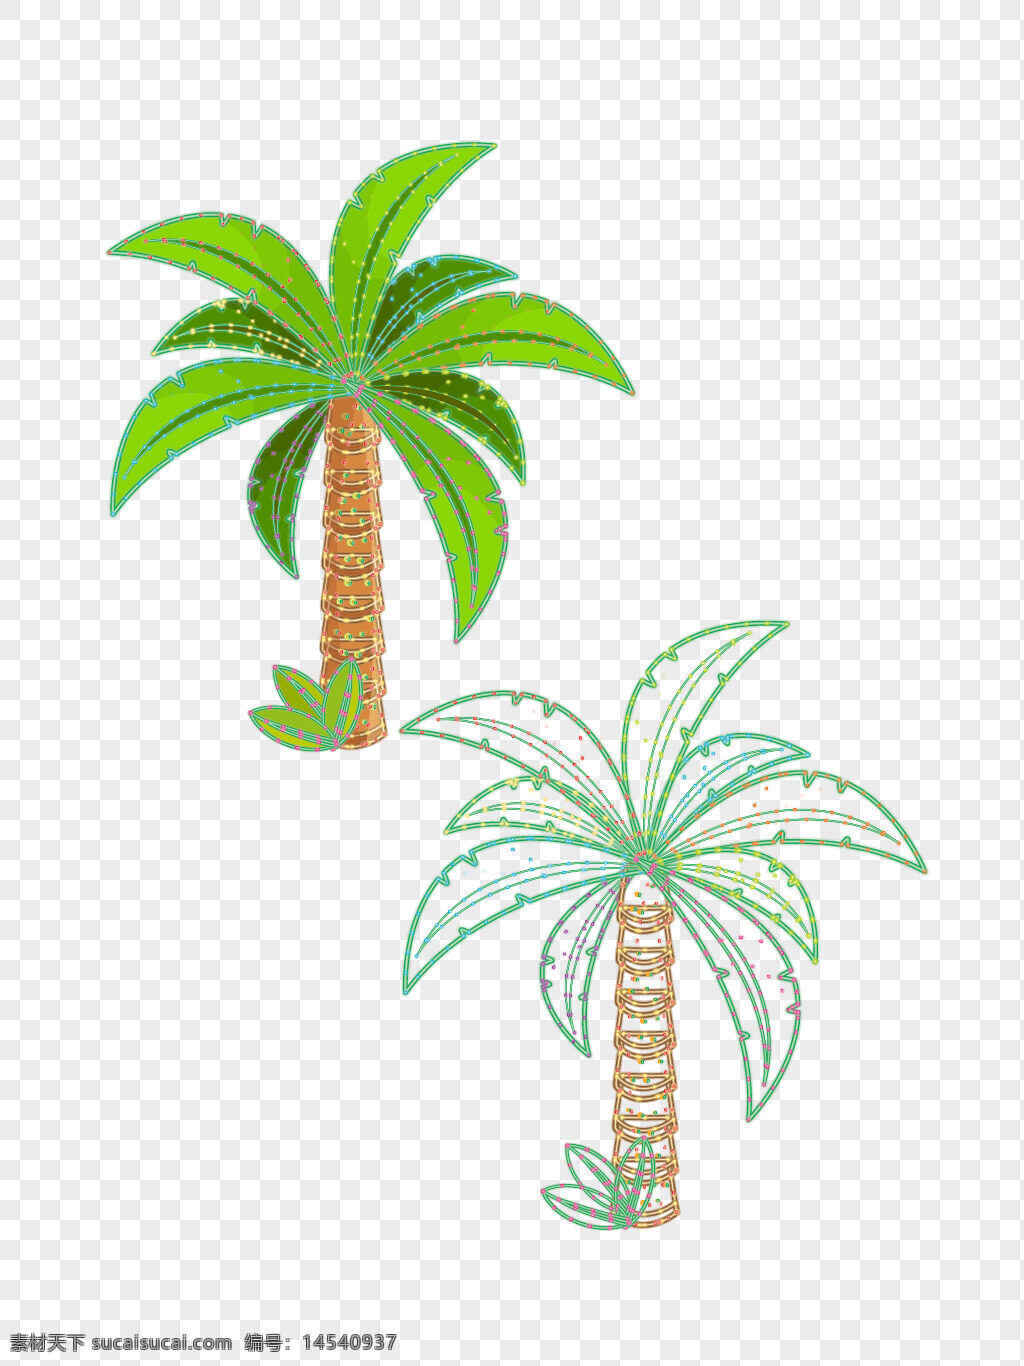 绿色 棕榈树 霓虹灯 招牌 设计 矢量图 插画 素材 绿 色 棕 榈 树 霓虹 灯 招 牌 设 计 矢量 图 插 画 素 材 绿色的棕榈树 霓虹灯招牌 设计矢量图 插画素材